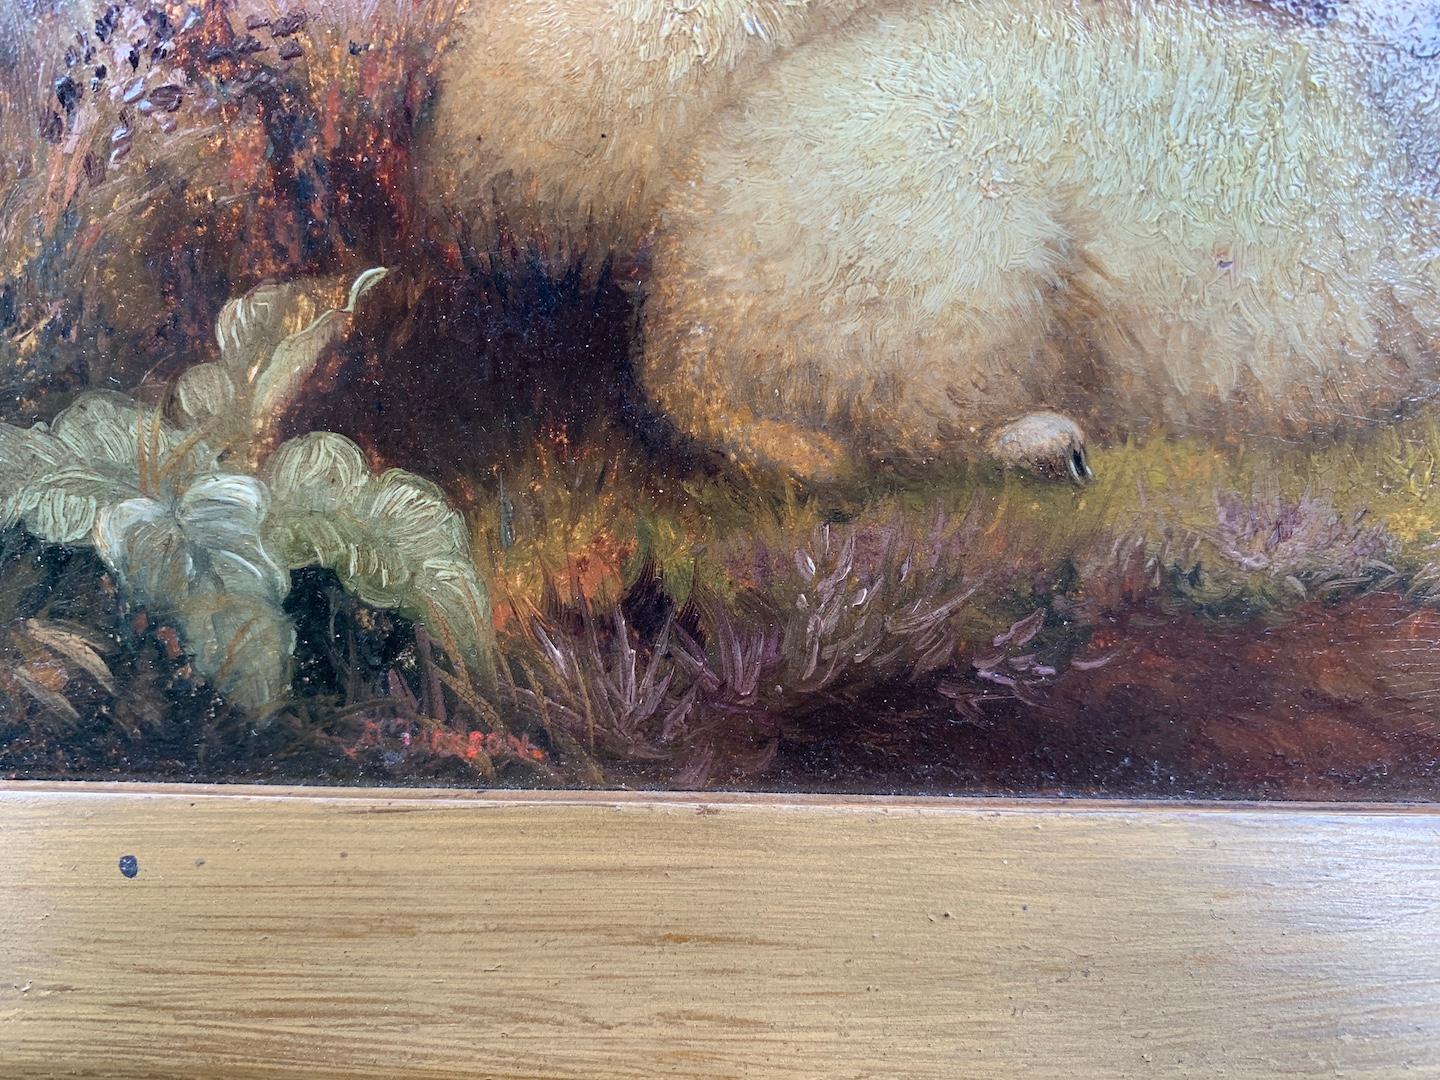 H. Jackson. Englische Landschaft aus dem 19. Jahrhundert mit Schafen, die auf einem Feld ruhen.

Englischer Maler des späten 19. Jahrhunderts, der Tiere in Ställen oder Landschaften darstellt. Seine Gemälde stehen unter dem Einfluss der Arbeiten des